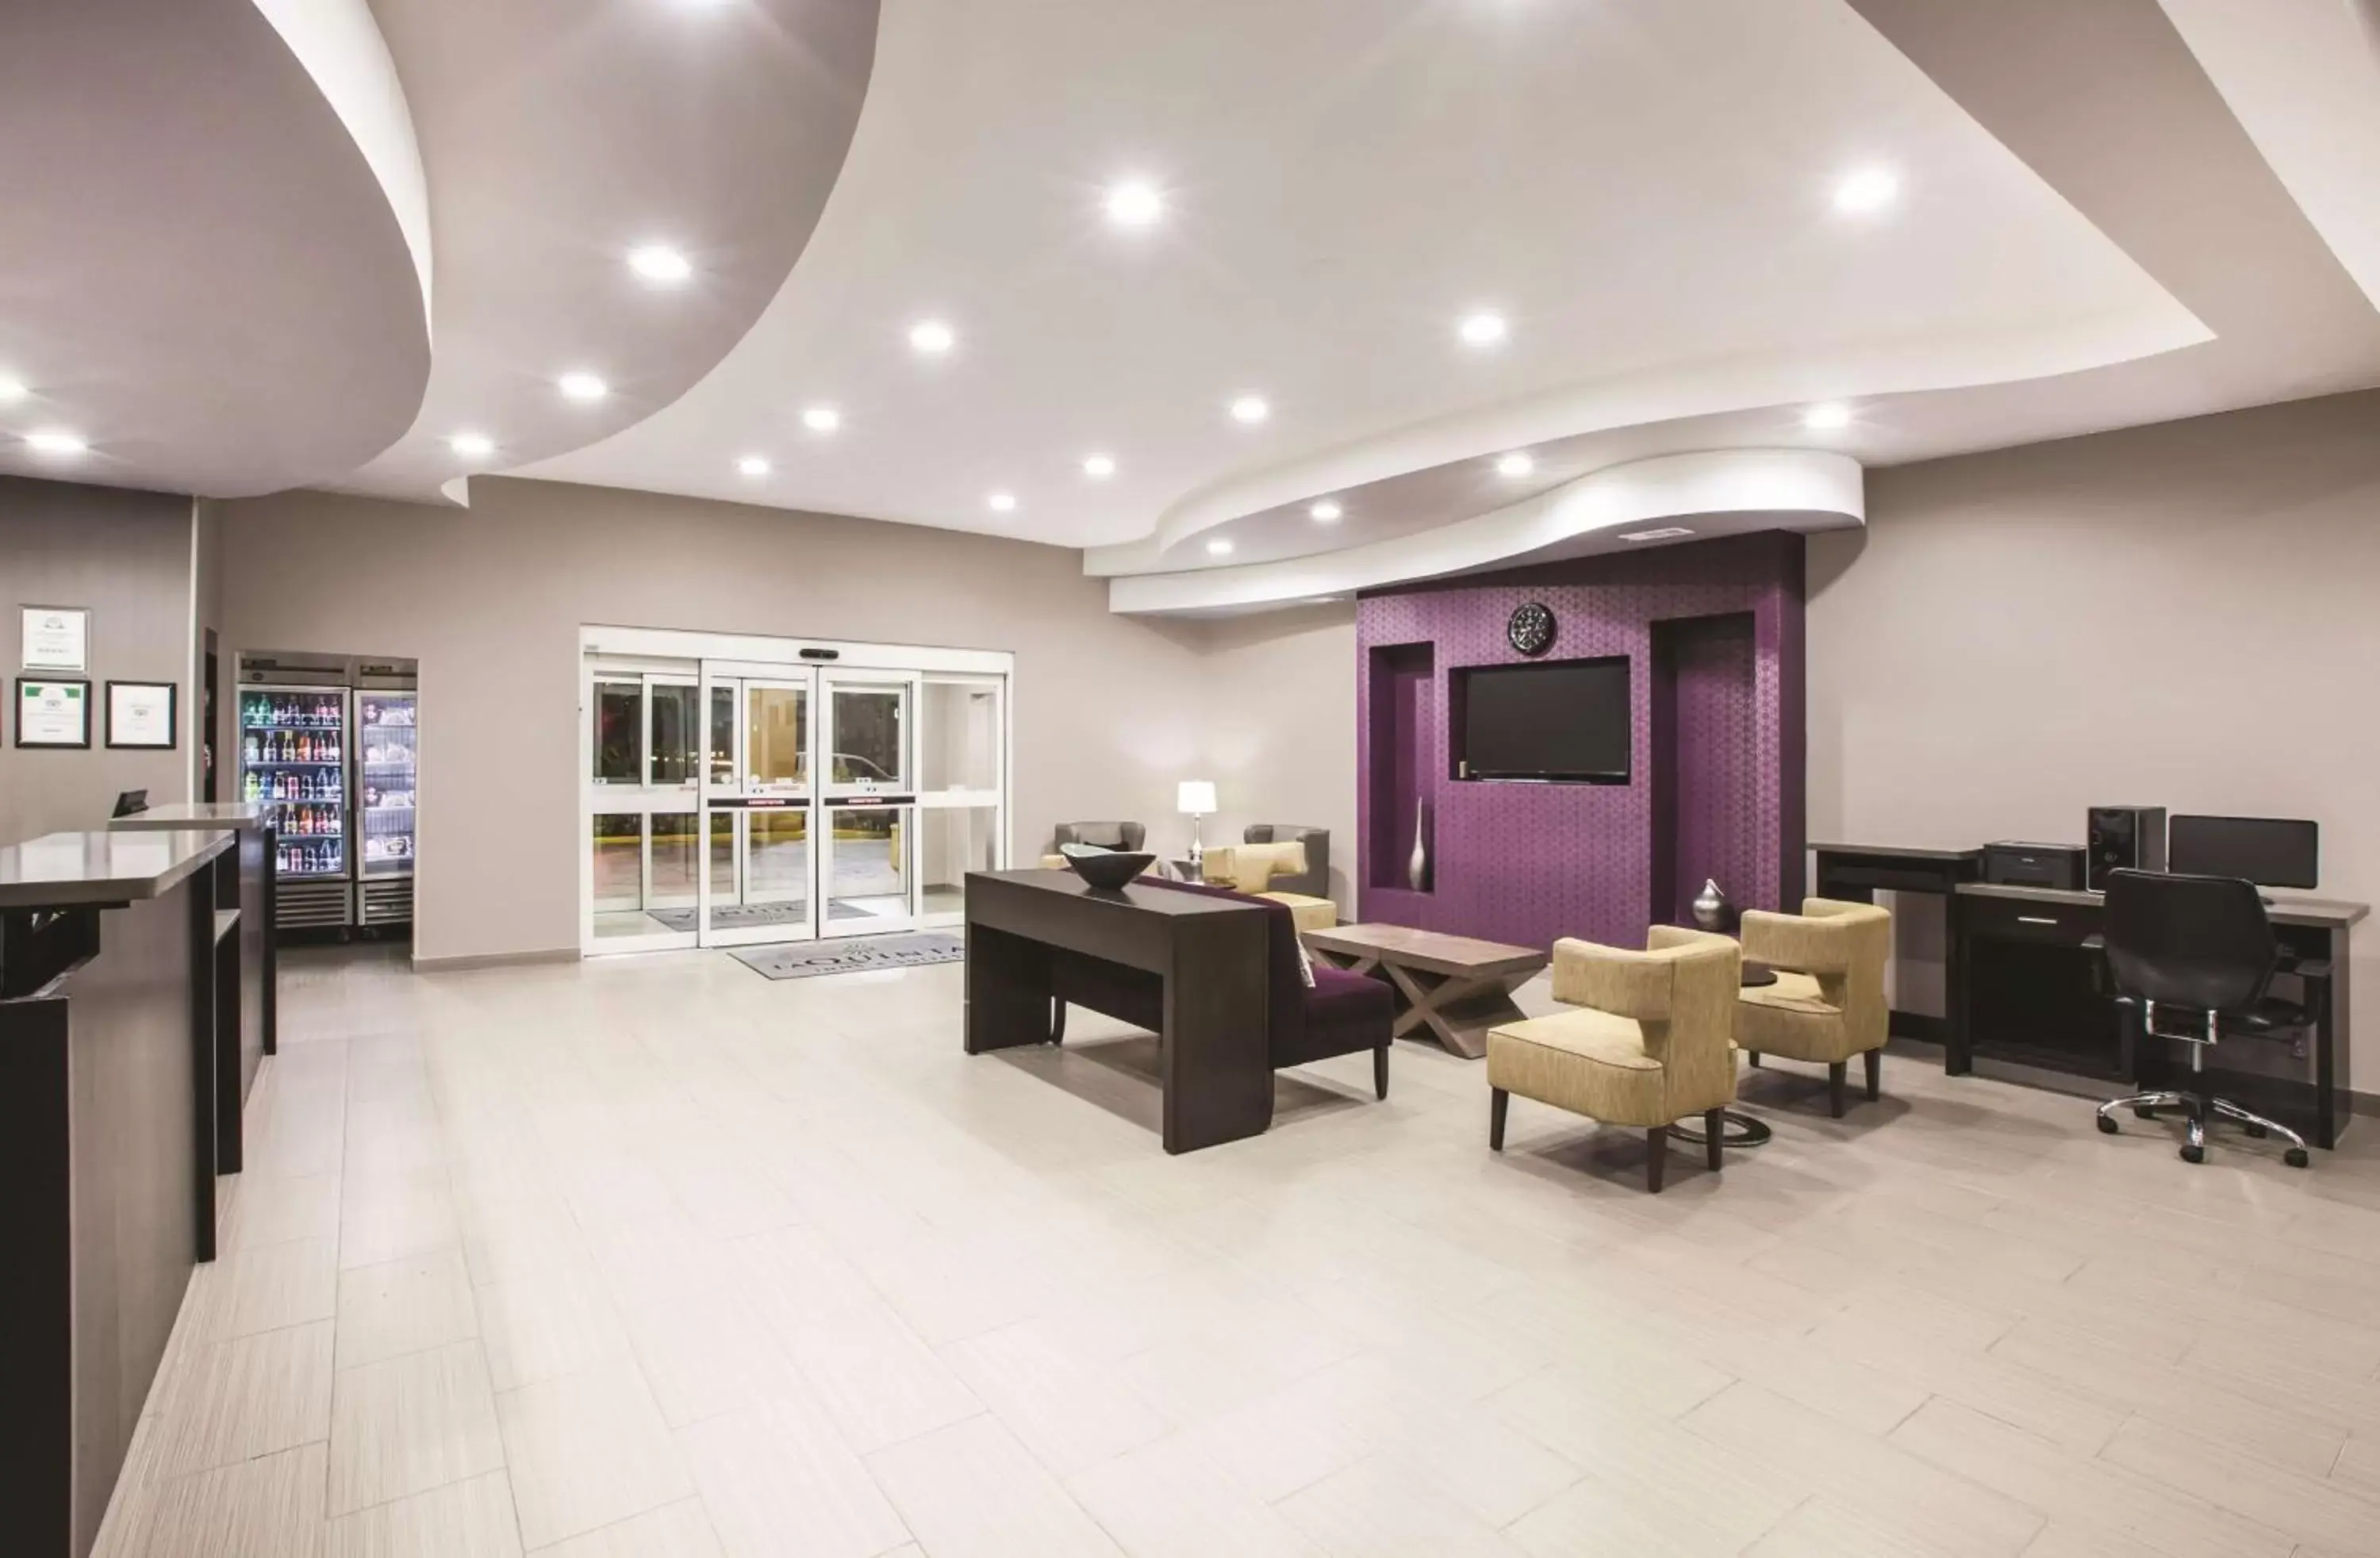 Lobby or reception, Lobby/Reception in La Quinta by Wyndham Baton Rouge Denham Springs